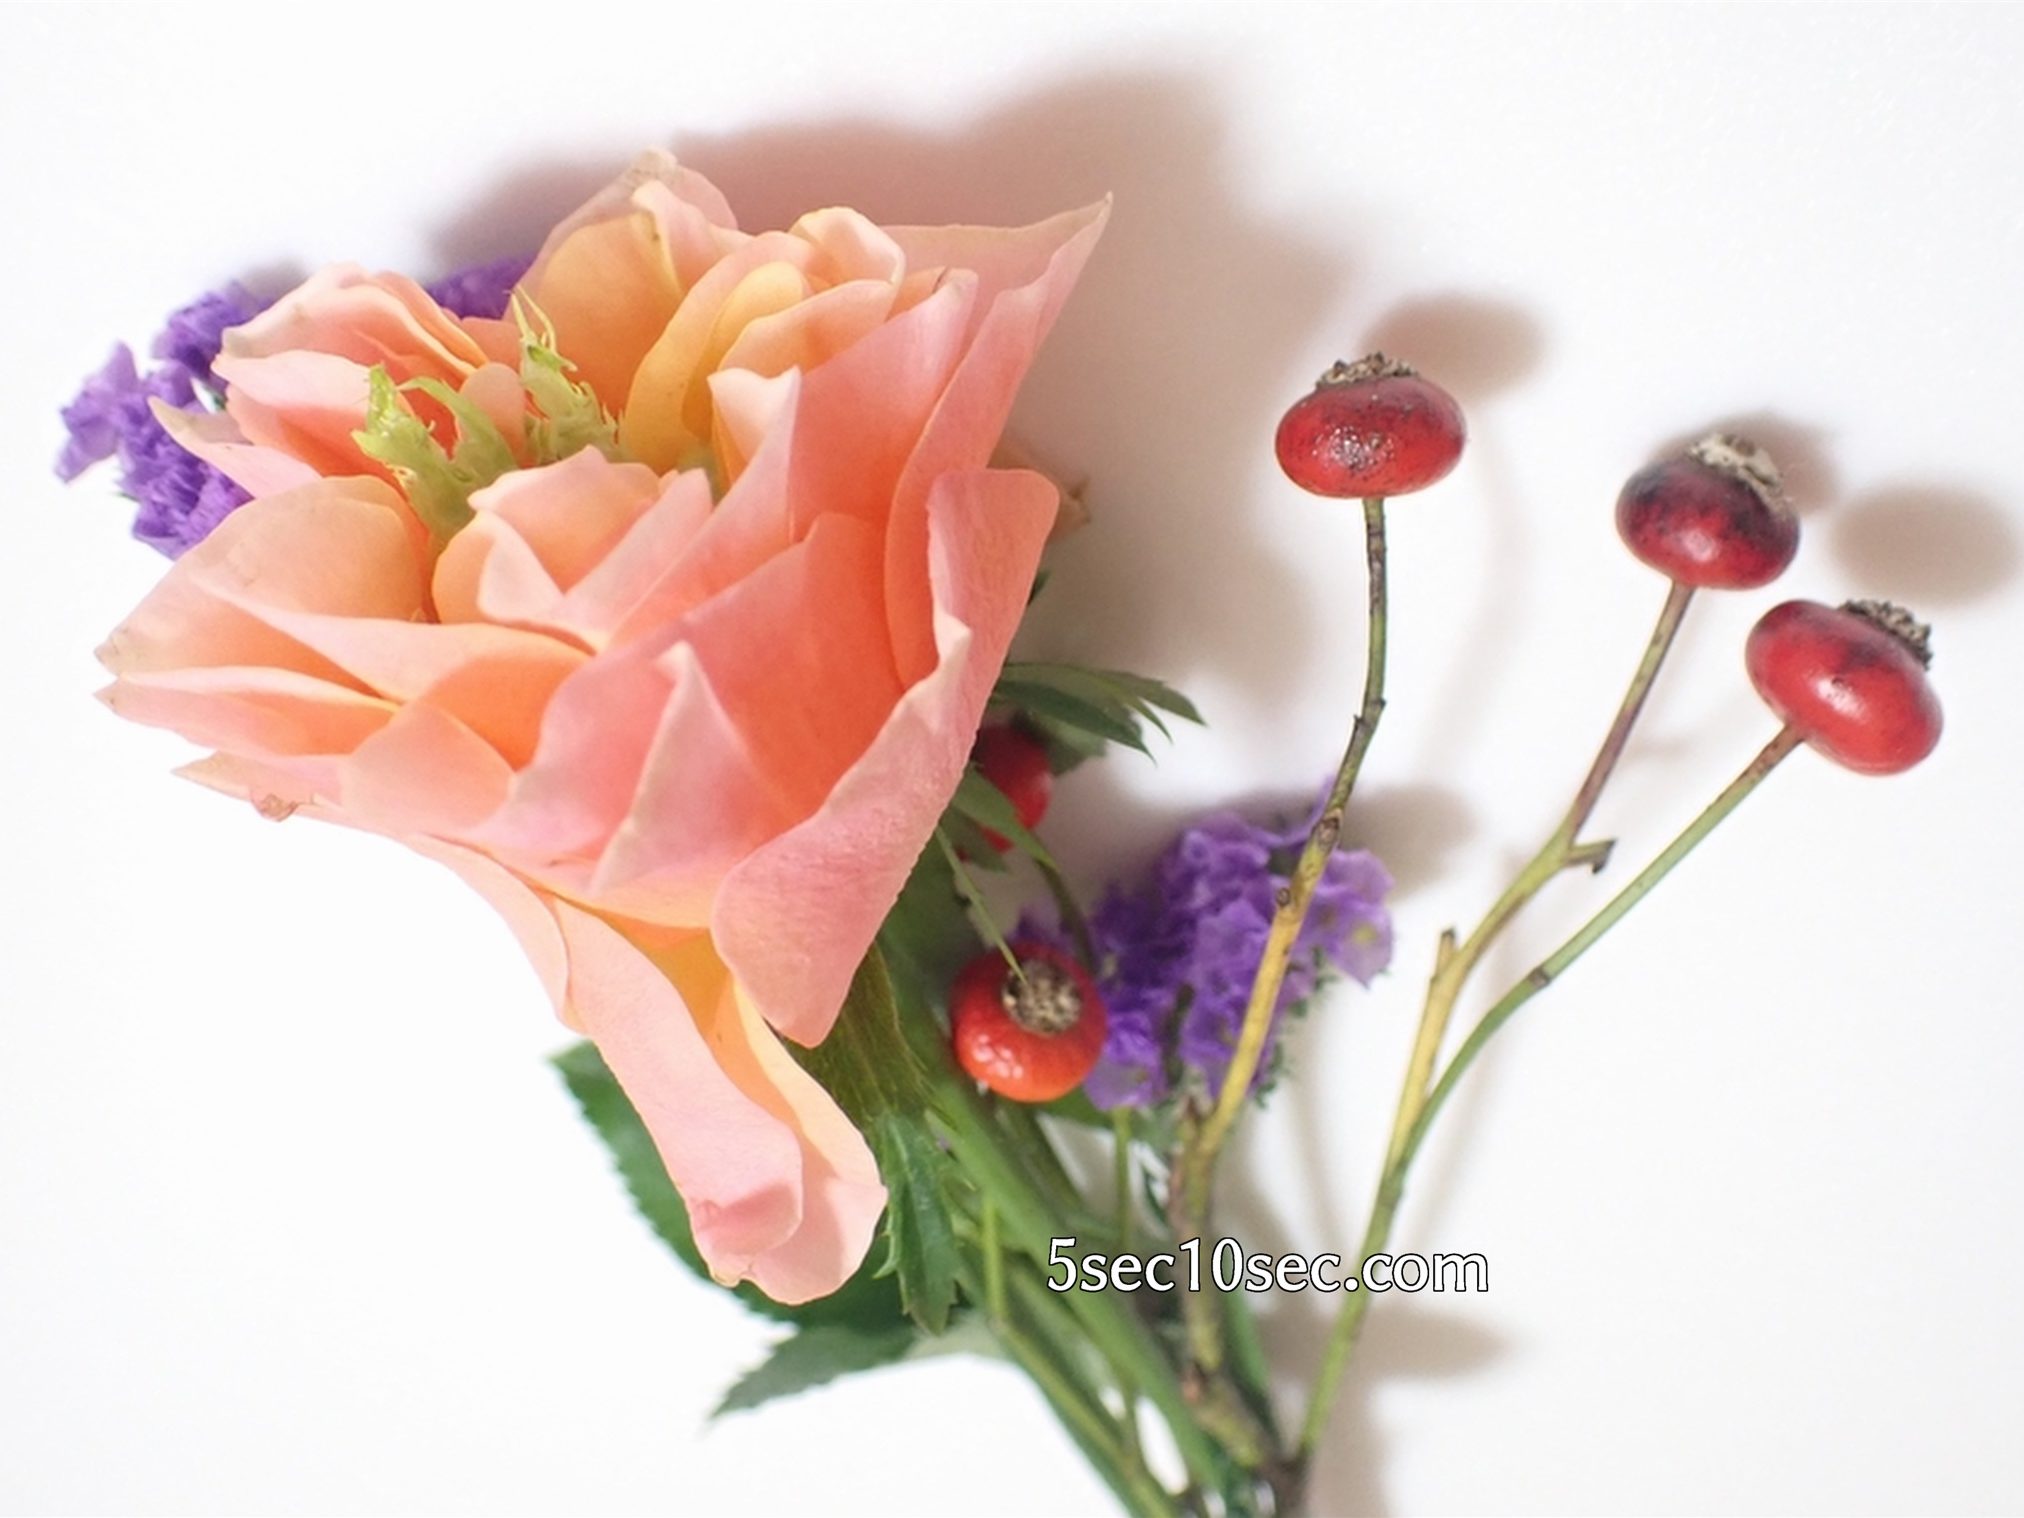 株式会社Crunch Style お花の定期便 Bloomee LIFE ブルーミーライフ　500円(税別・送料別)の体験プラン　届いたお花の写真、良い状態の元気なお花が届きました